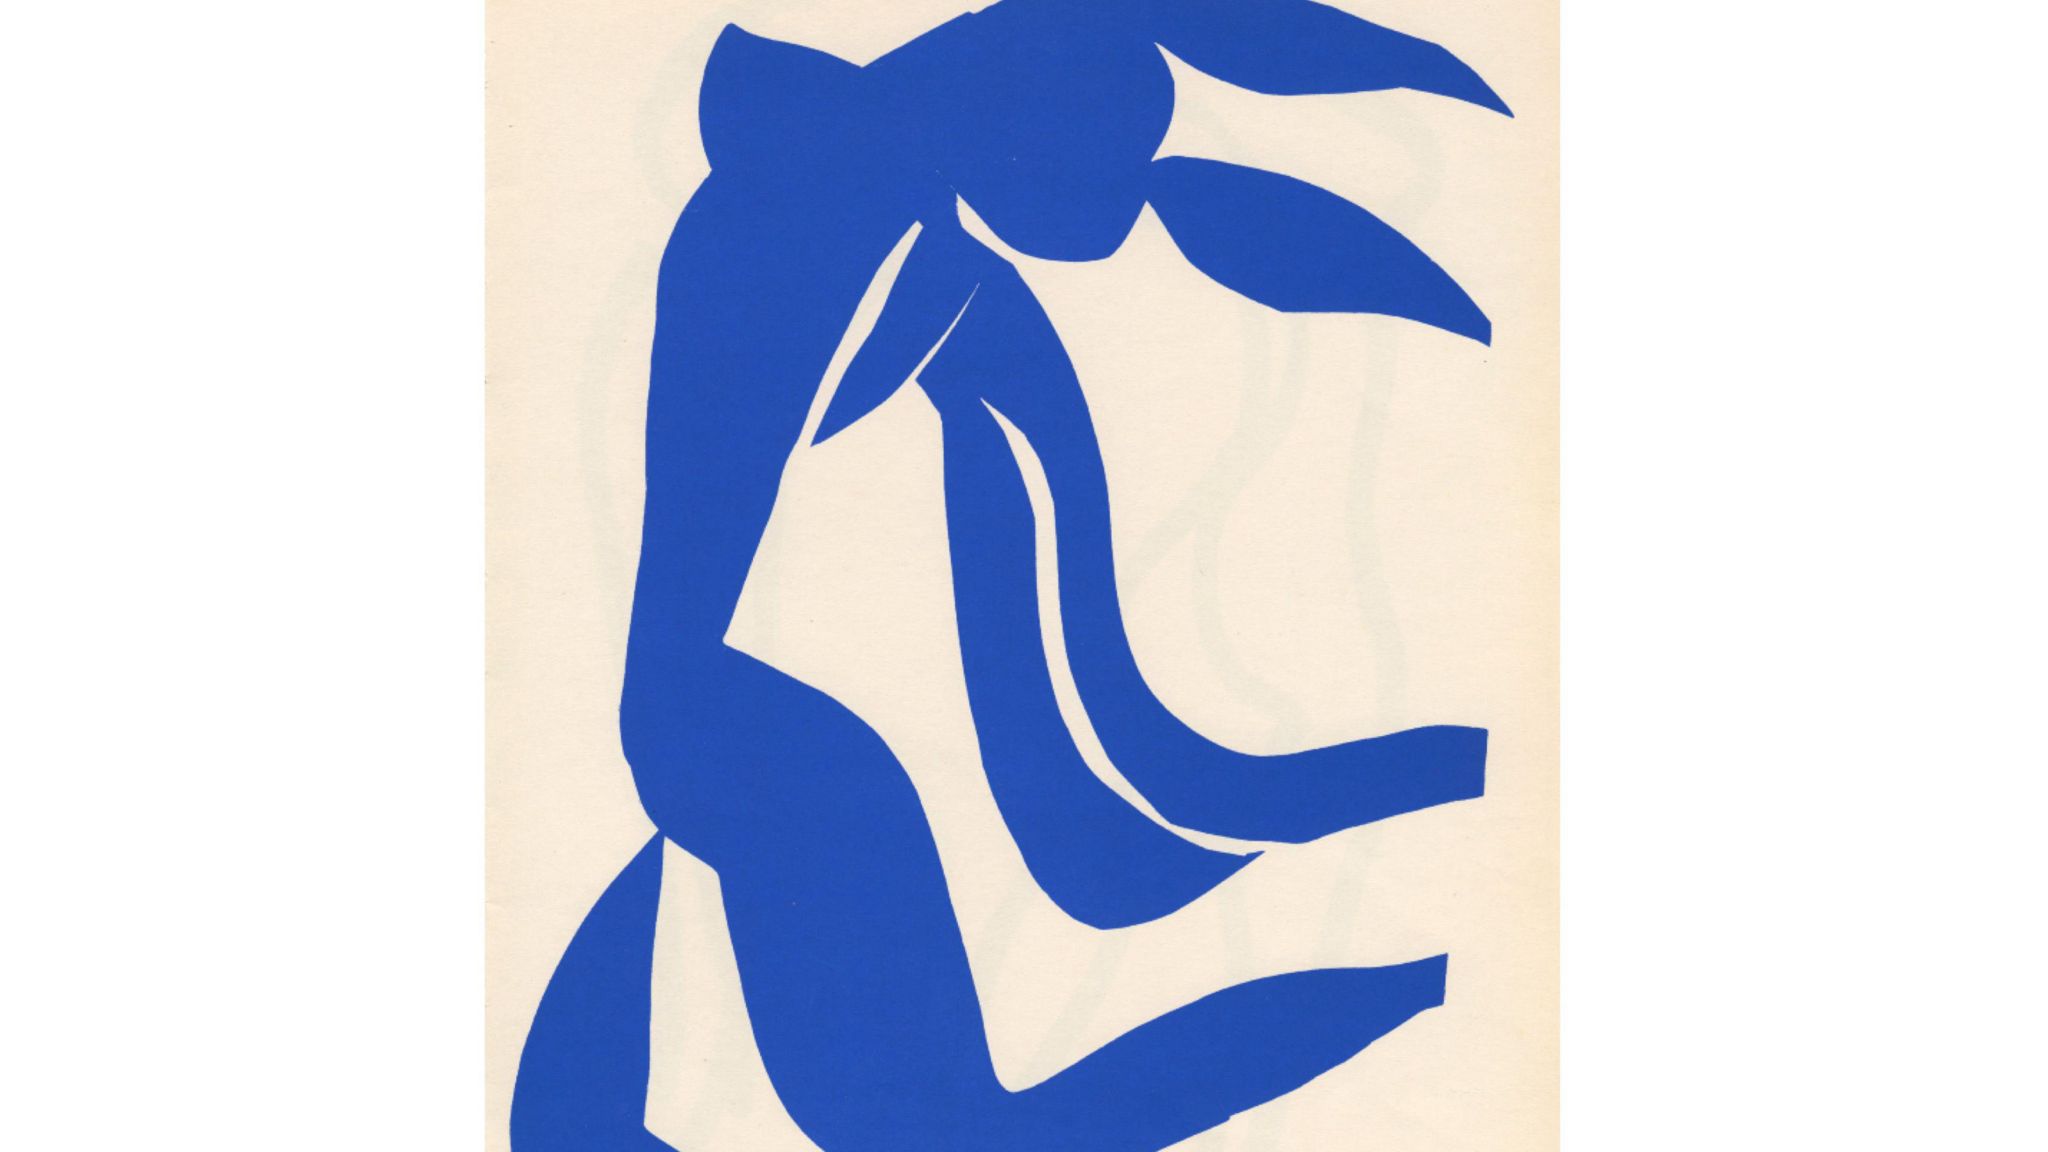 La Chevelure by Henri Matisse